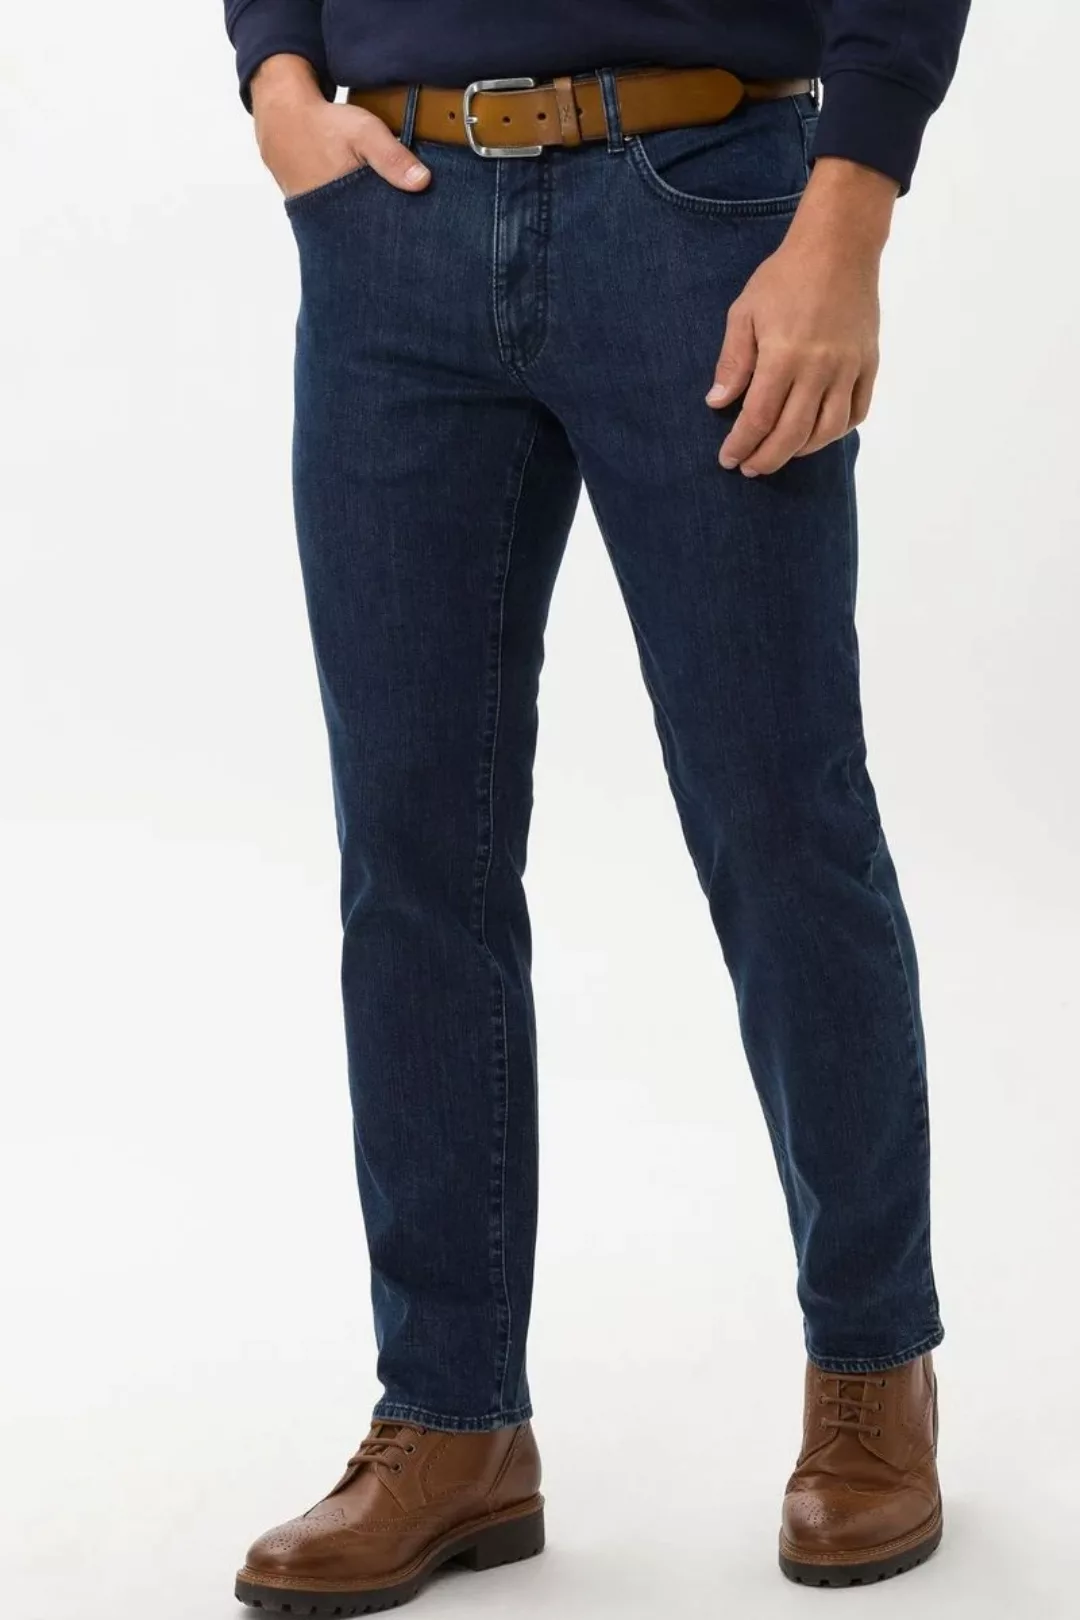 Brax Cadiz Jeans Dunkelblau - Größe W 34 - L 34 günstig online kaufen